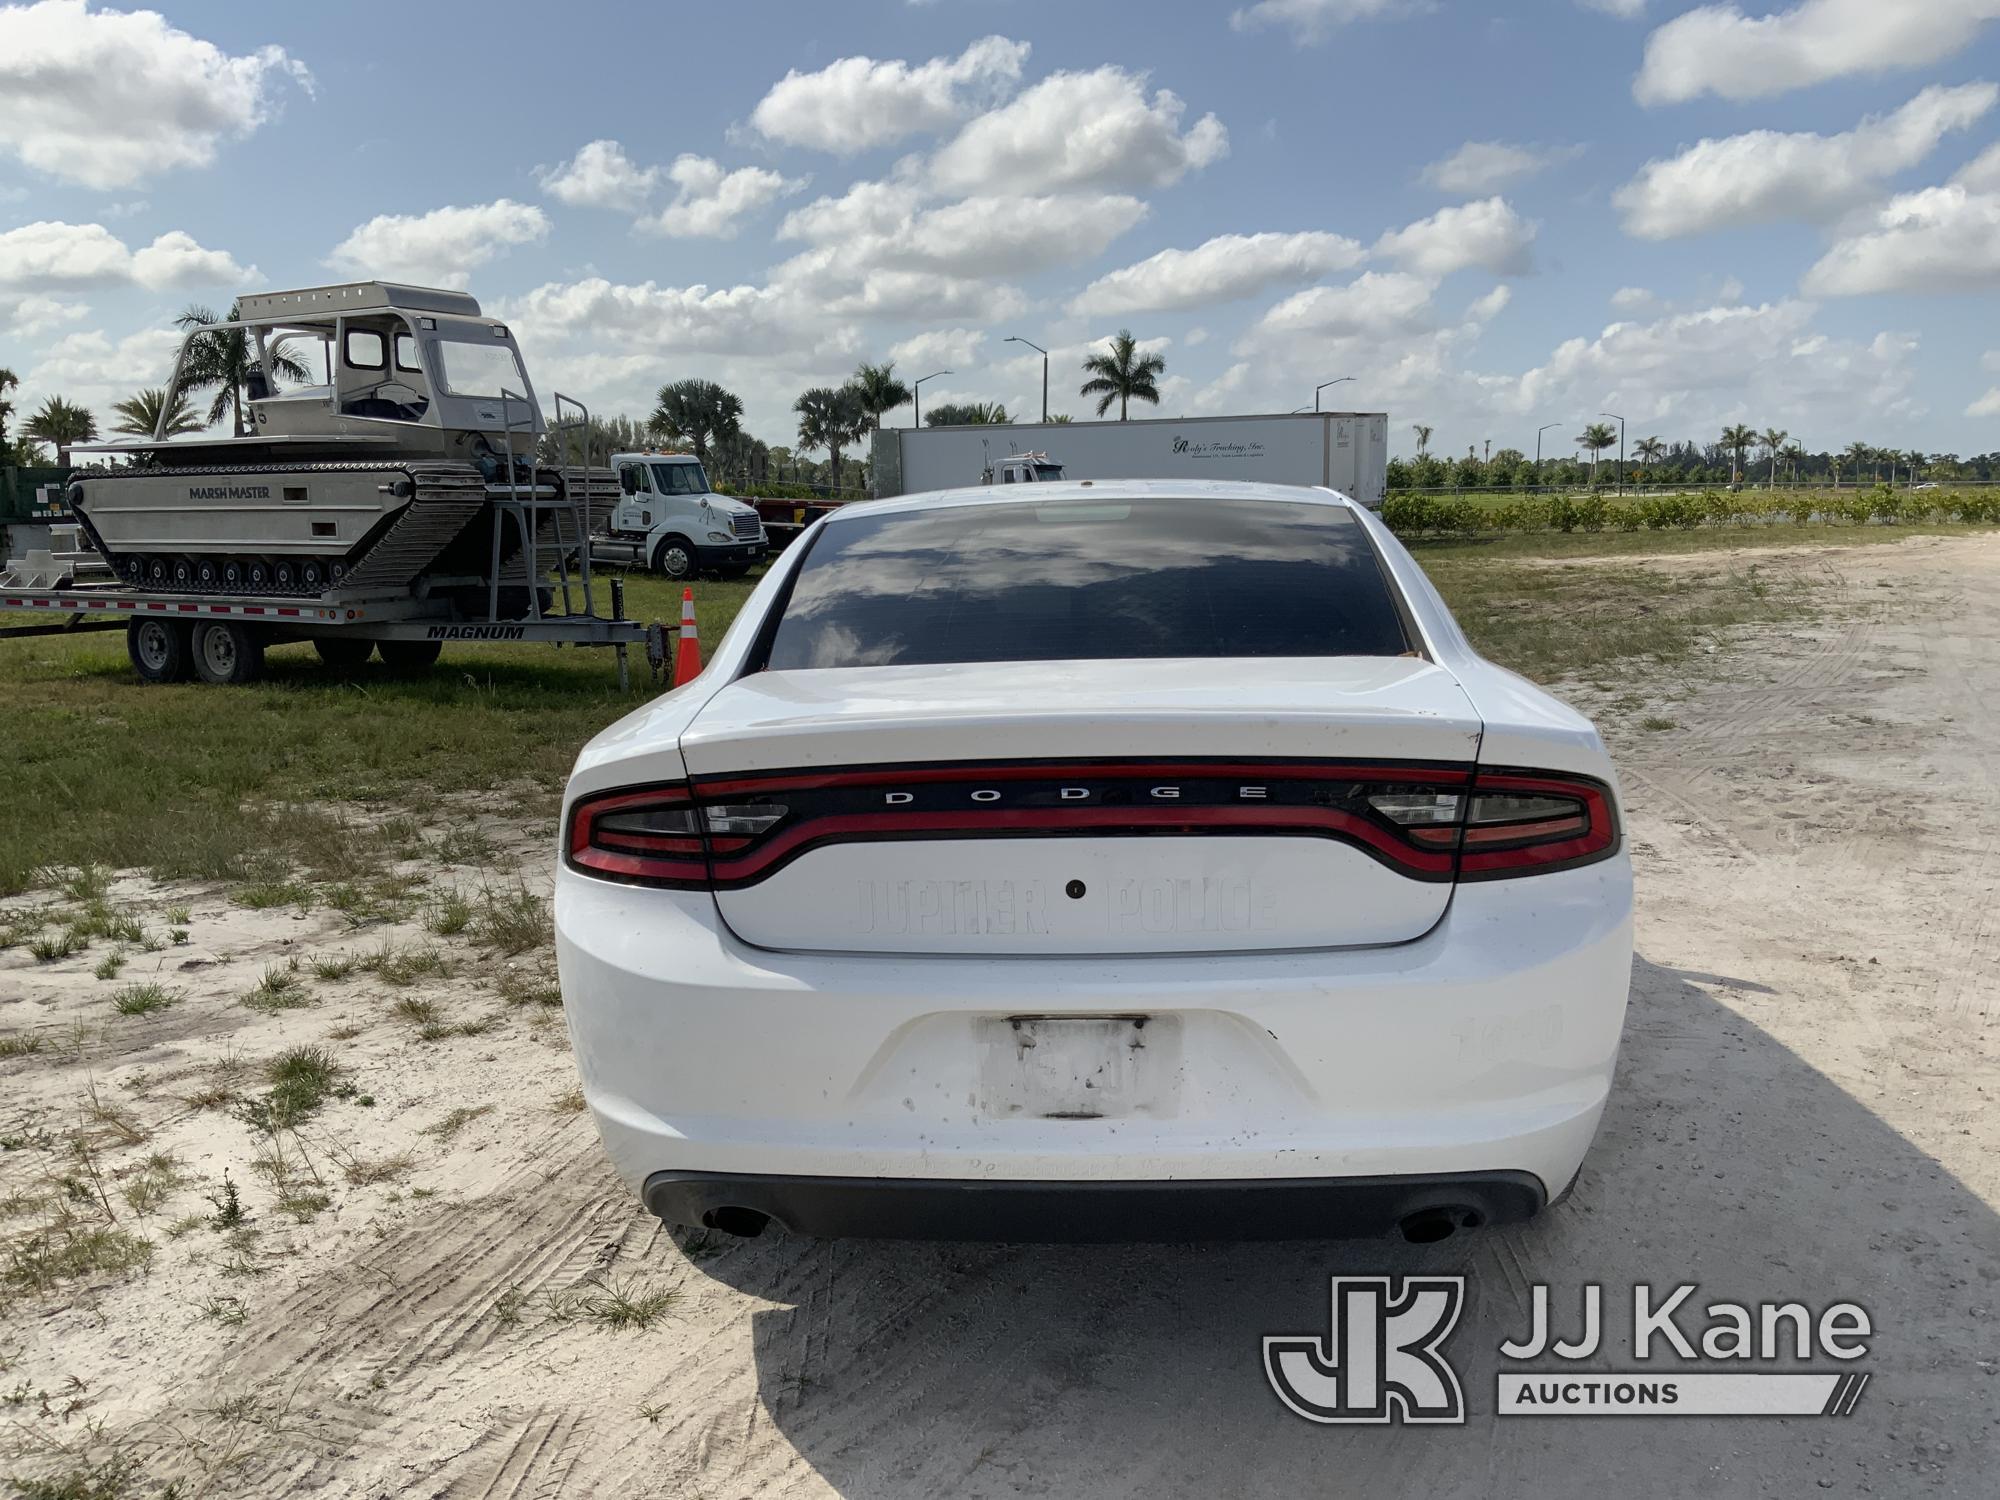 (Westlake, FL) 2016 Dodge Charger Police Package 4-Door Sedan, Former Police Vehicle Runs & Moves) (